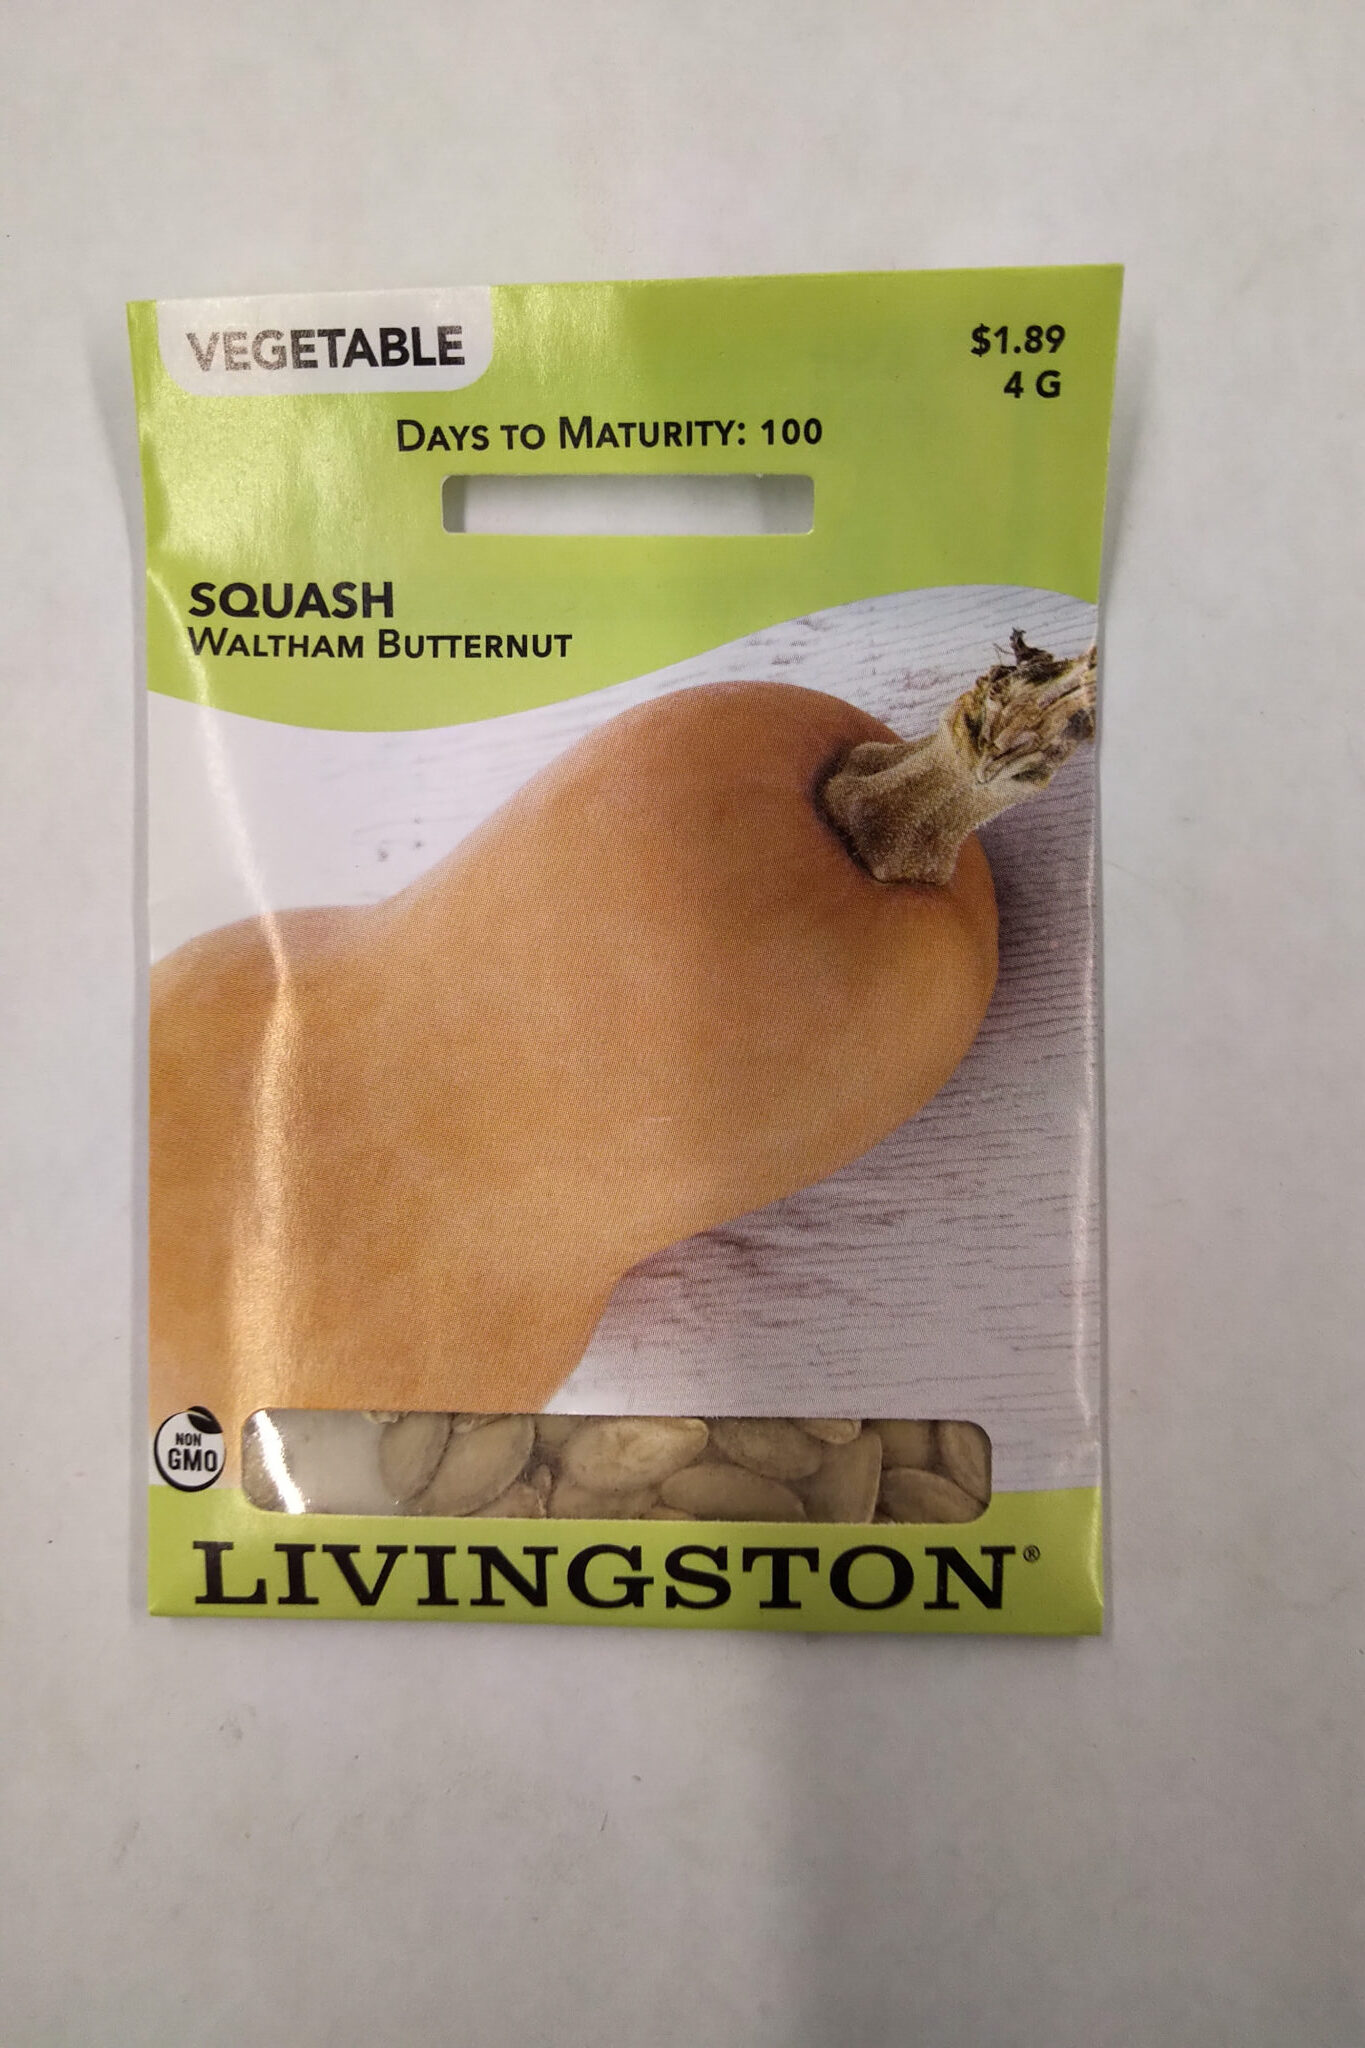 Y4760 Waltham Butternut Squash Seed, Squash, 4 g Pack